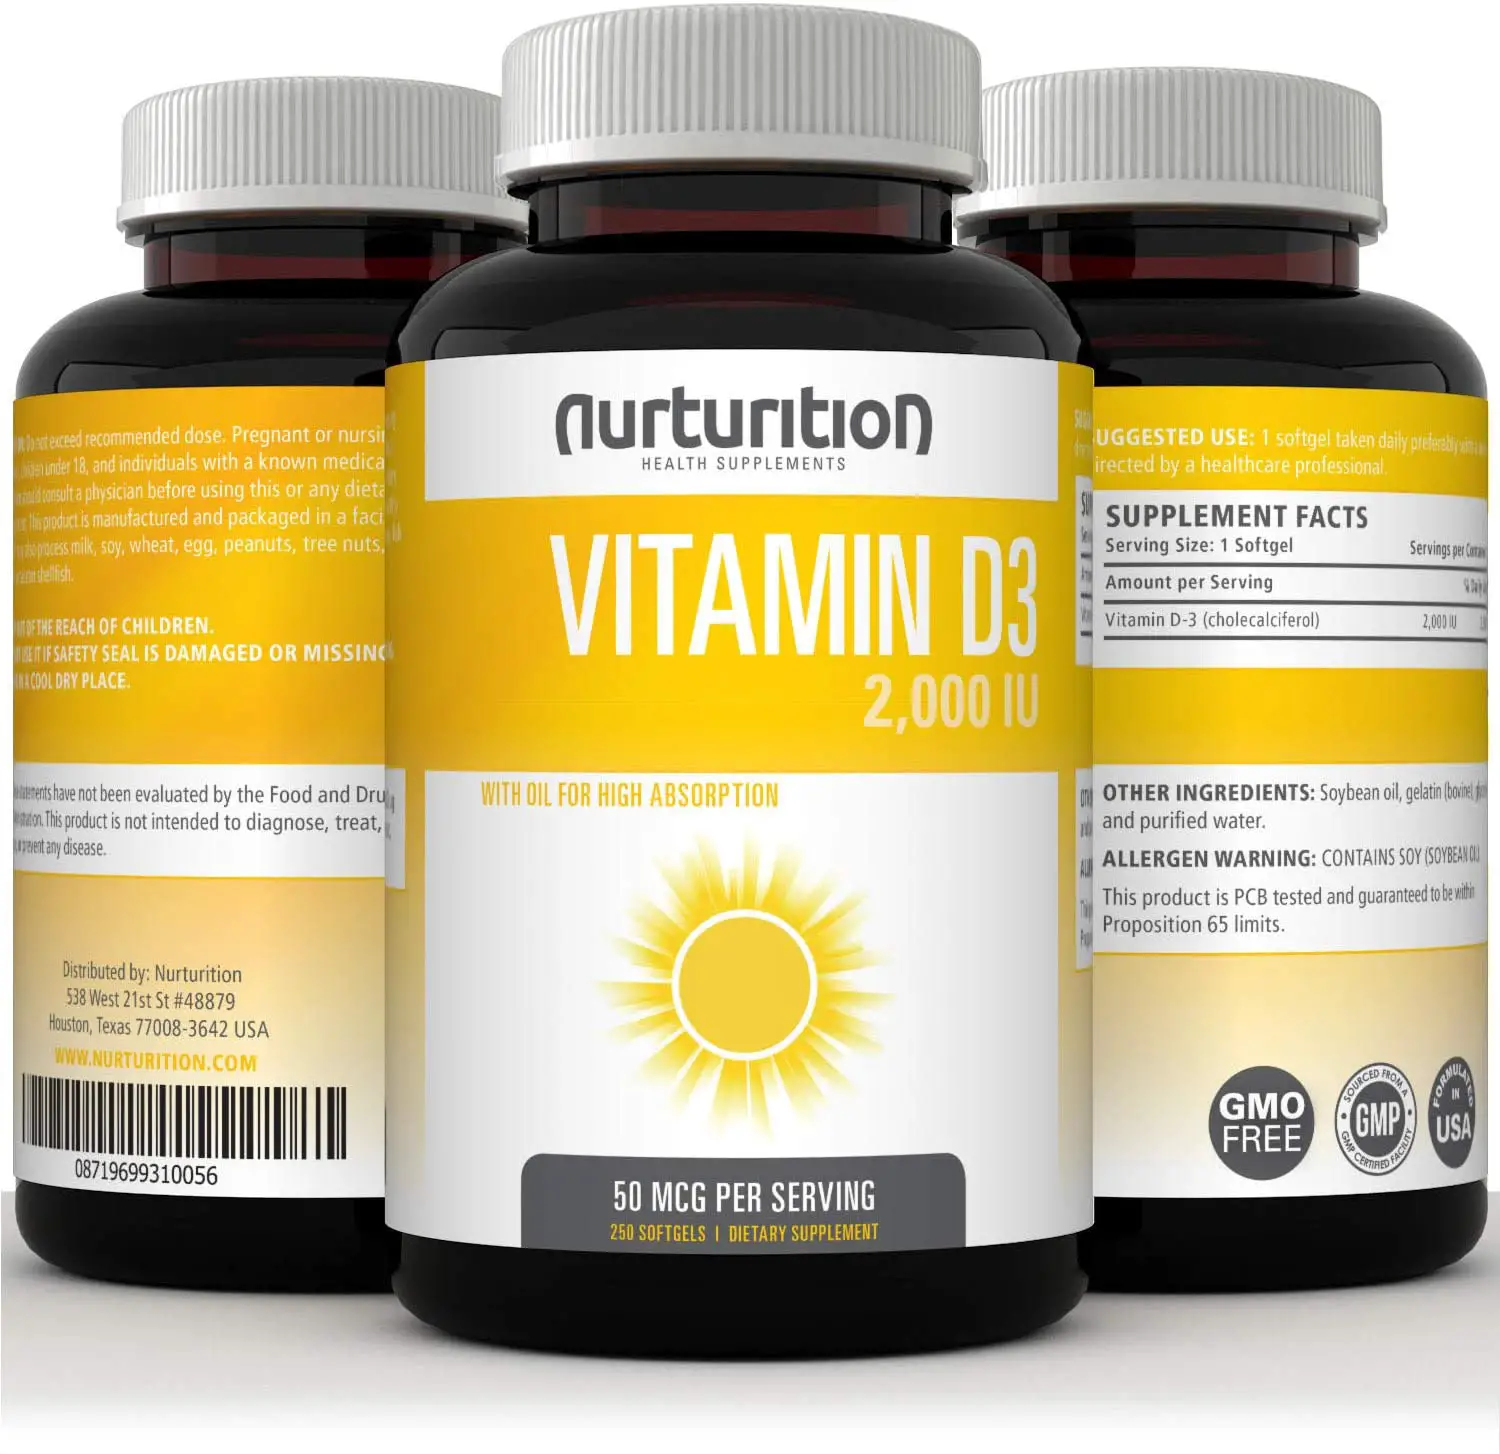 NURTURITION Vitamin D 2000